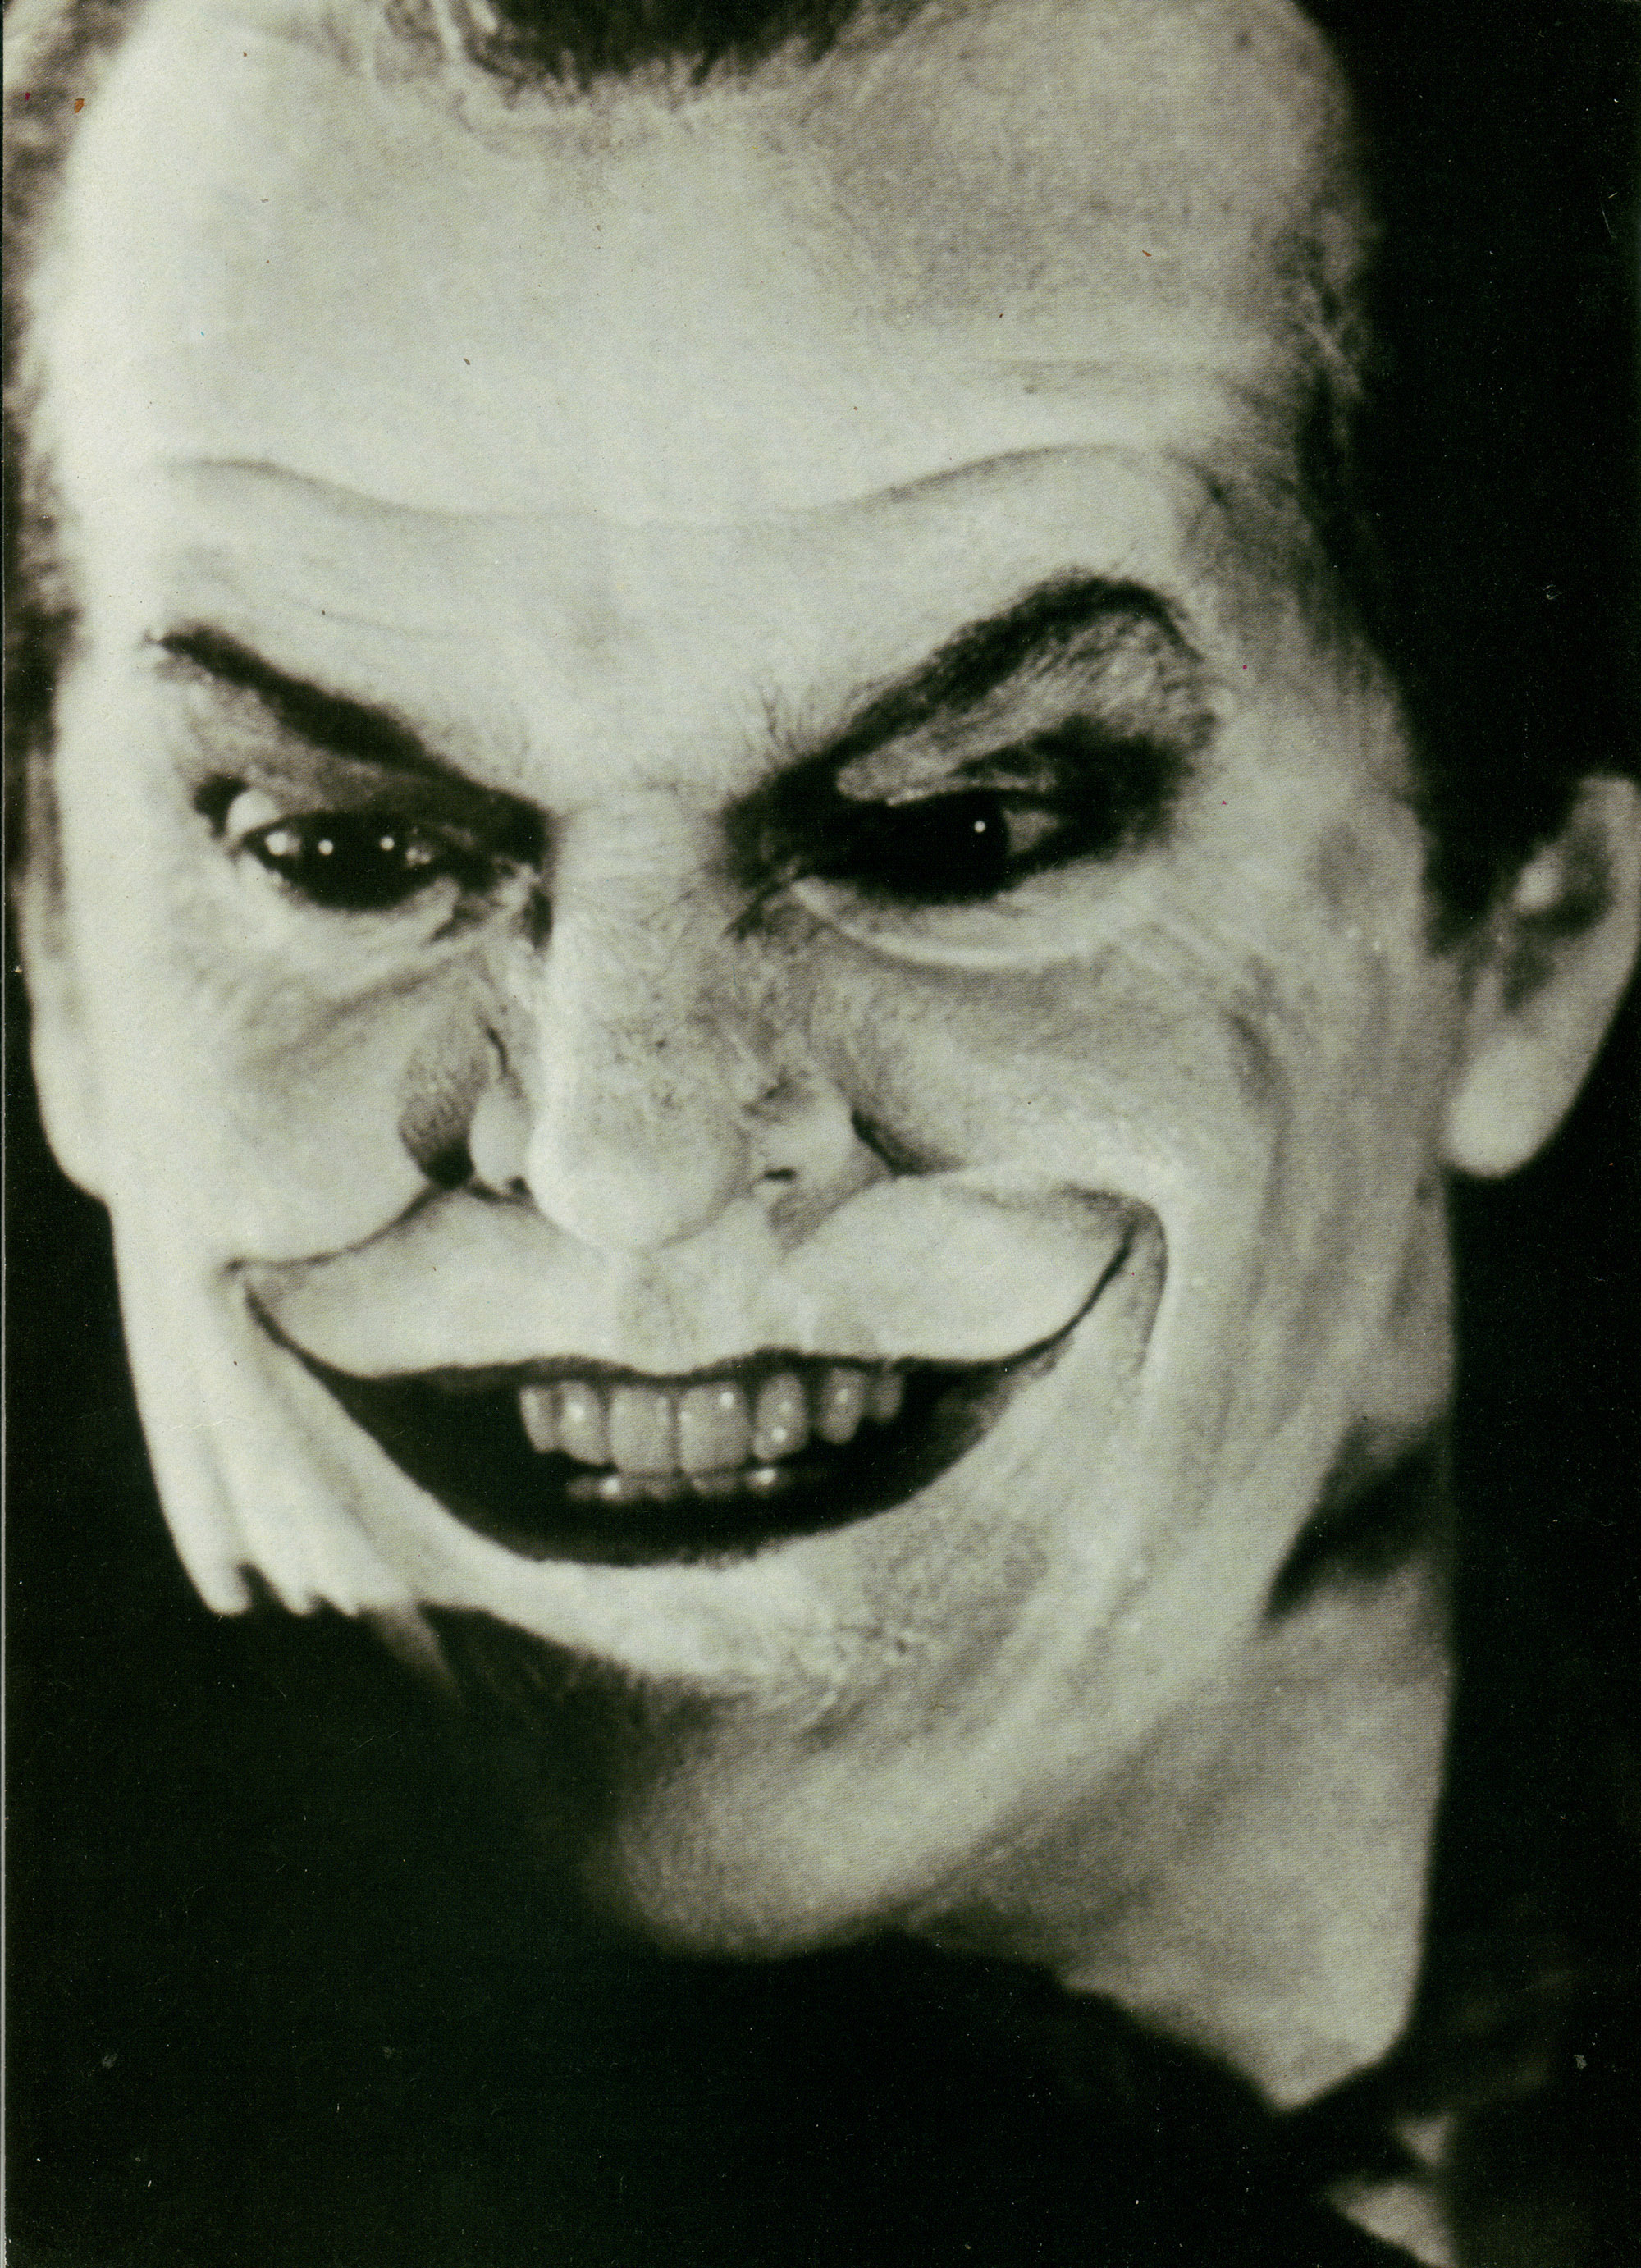 BATMAN ONLINE - Gallery - Joker | Jack Nicholson from Batman (1989)